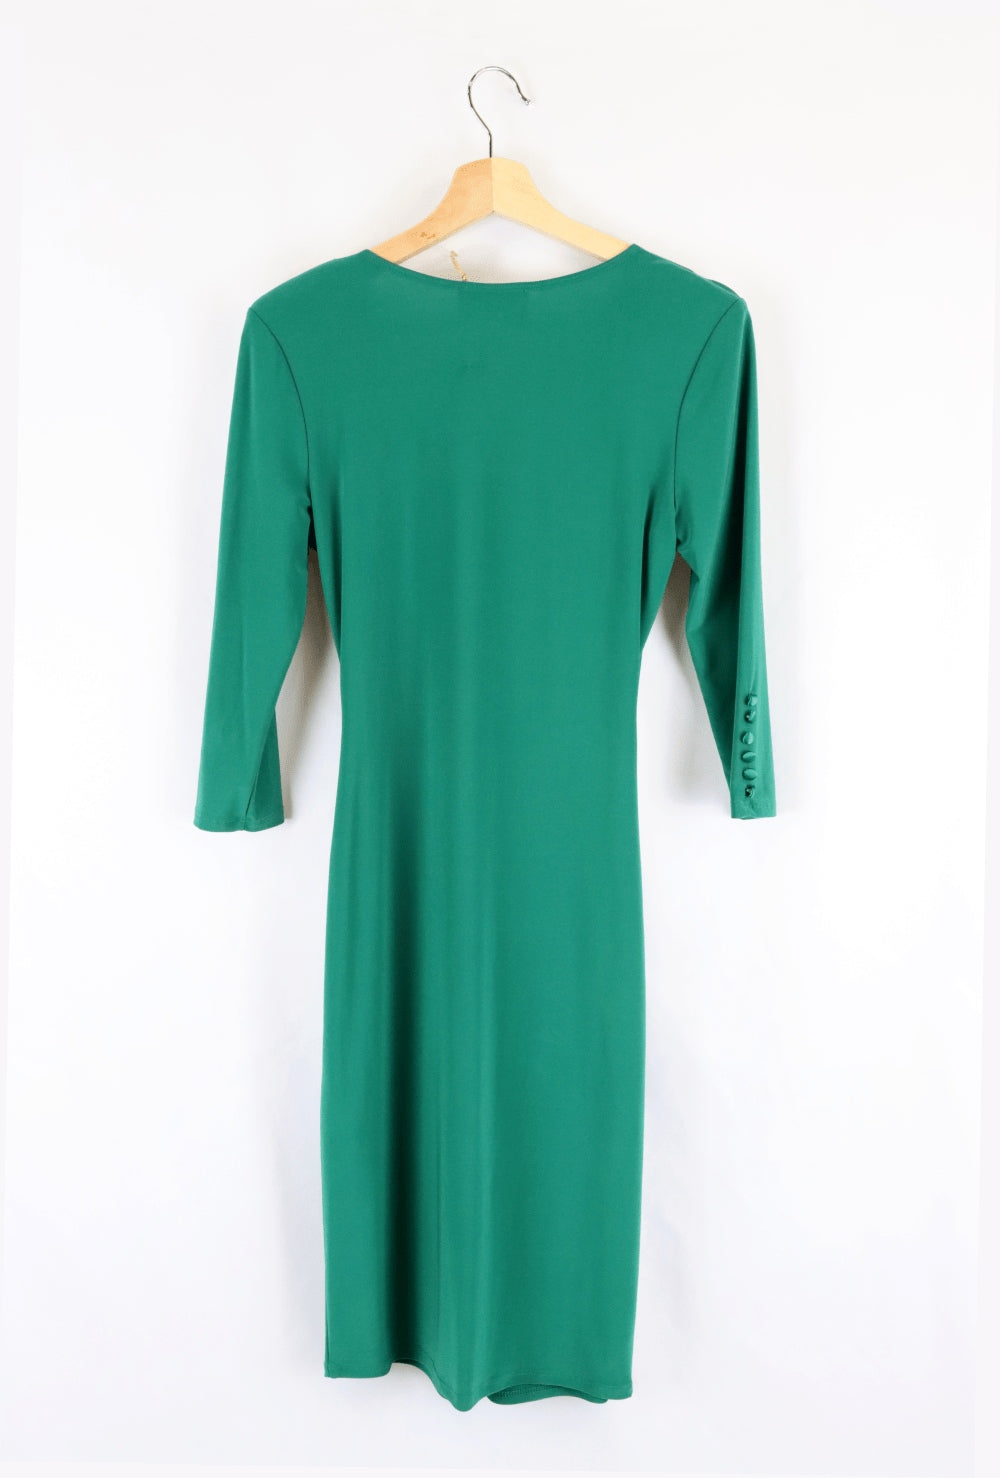 Joseph Ribkoff Green Dress 6